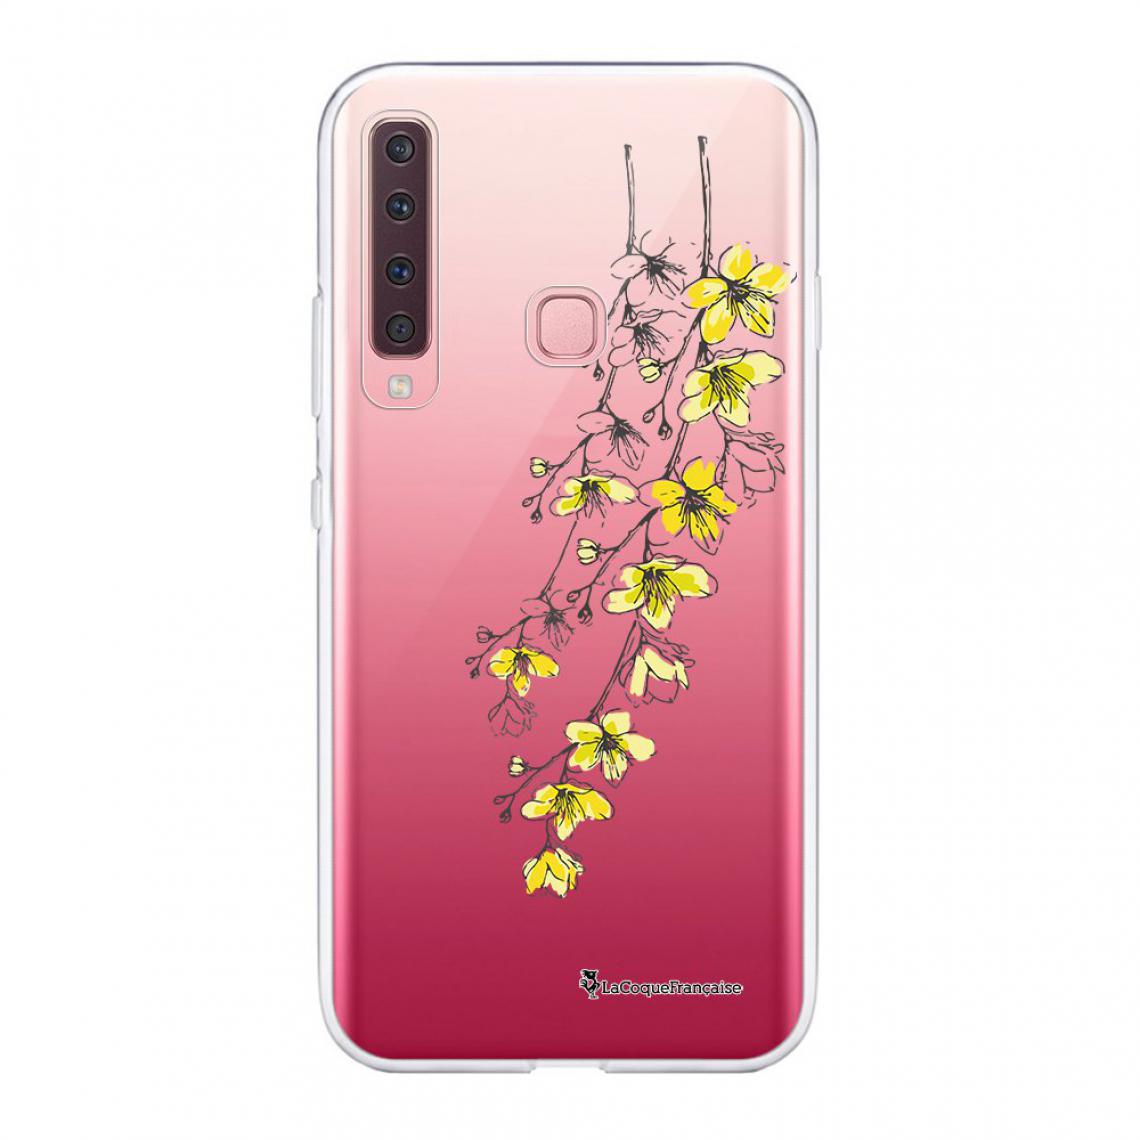 La Coque Francaise - Coque Samsung Galaxy A9 2018 360 intégrale avant arrière transparente - Coque, étui smartphone